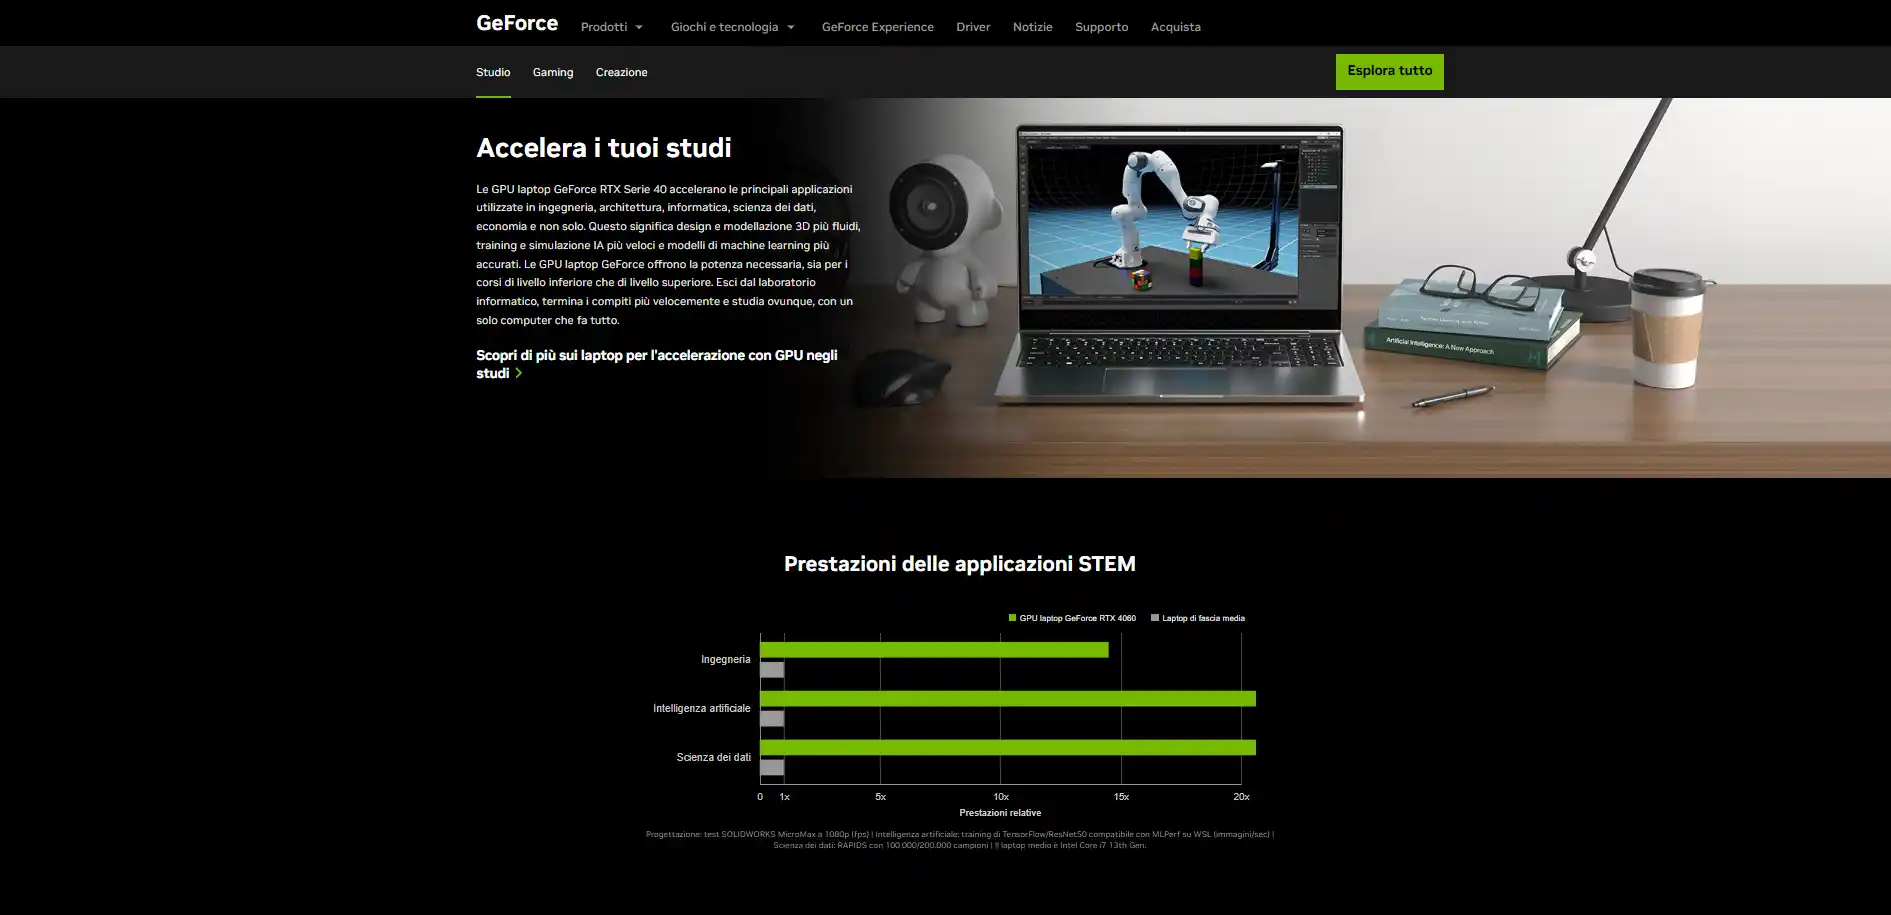 Nvidia Back To School: le nuove offerte di settembre su notebook gaming e schede video GeForce